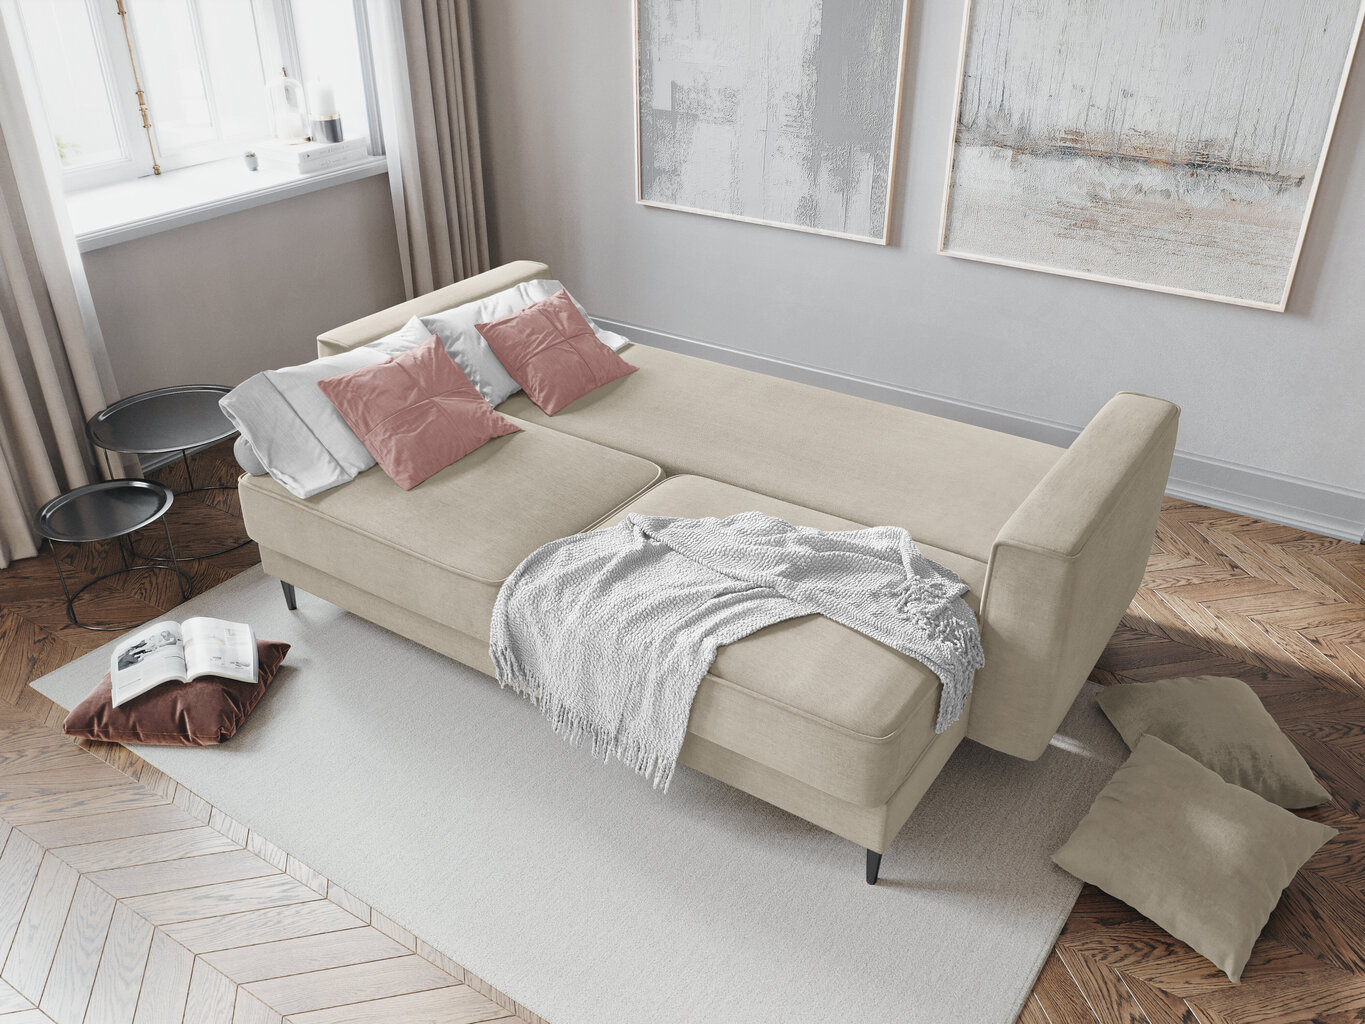 Sofa Cosmopolitan Design Fano, smėlio/juodos spalvos kaina ir informacija | Sofos | pigu.lt